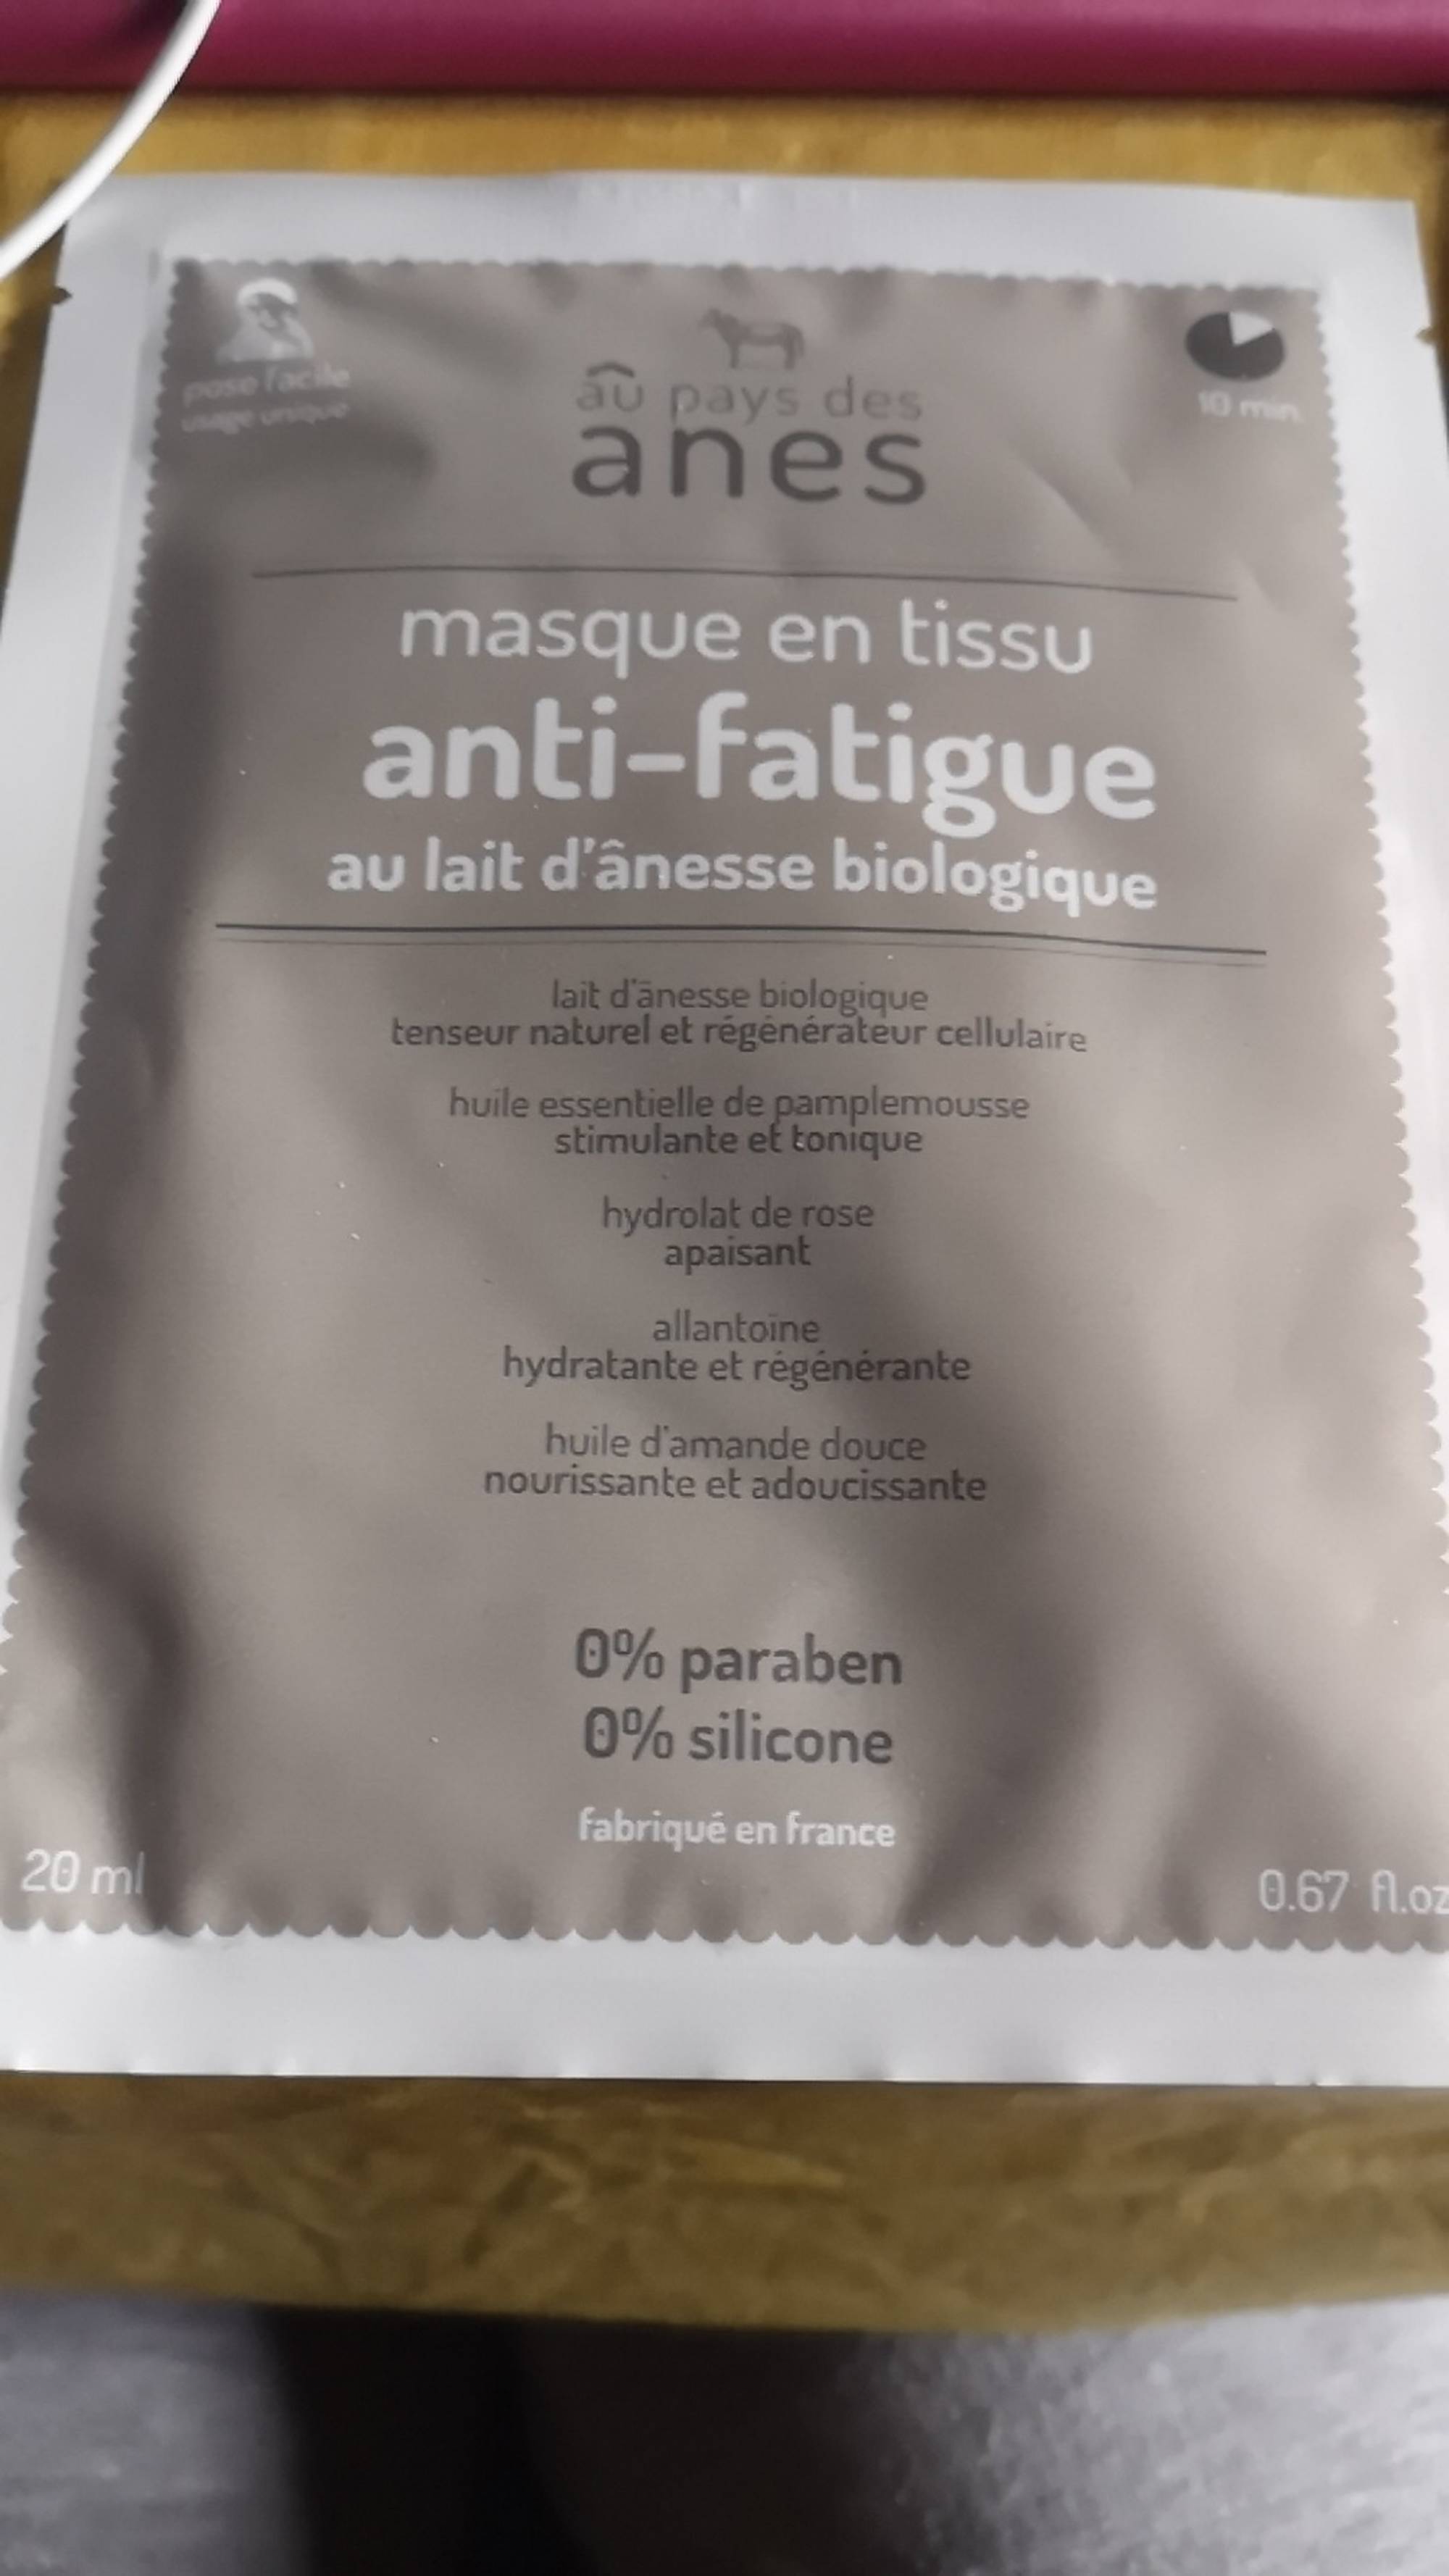 AU PAYS DES ÂNES - Masque en tissu anti-fatigue au lait d'ânesse biologique